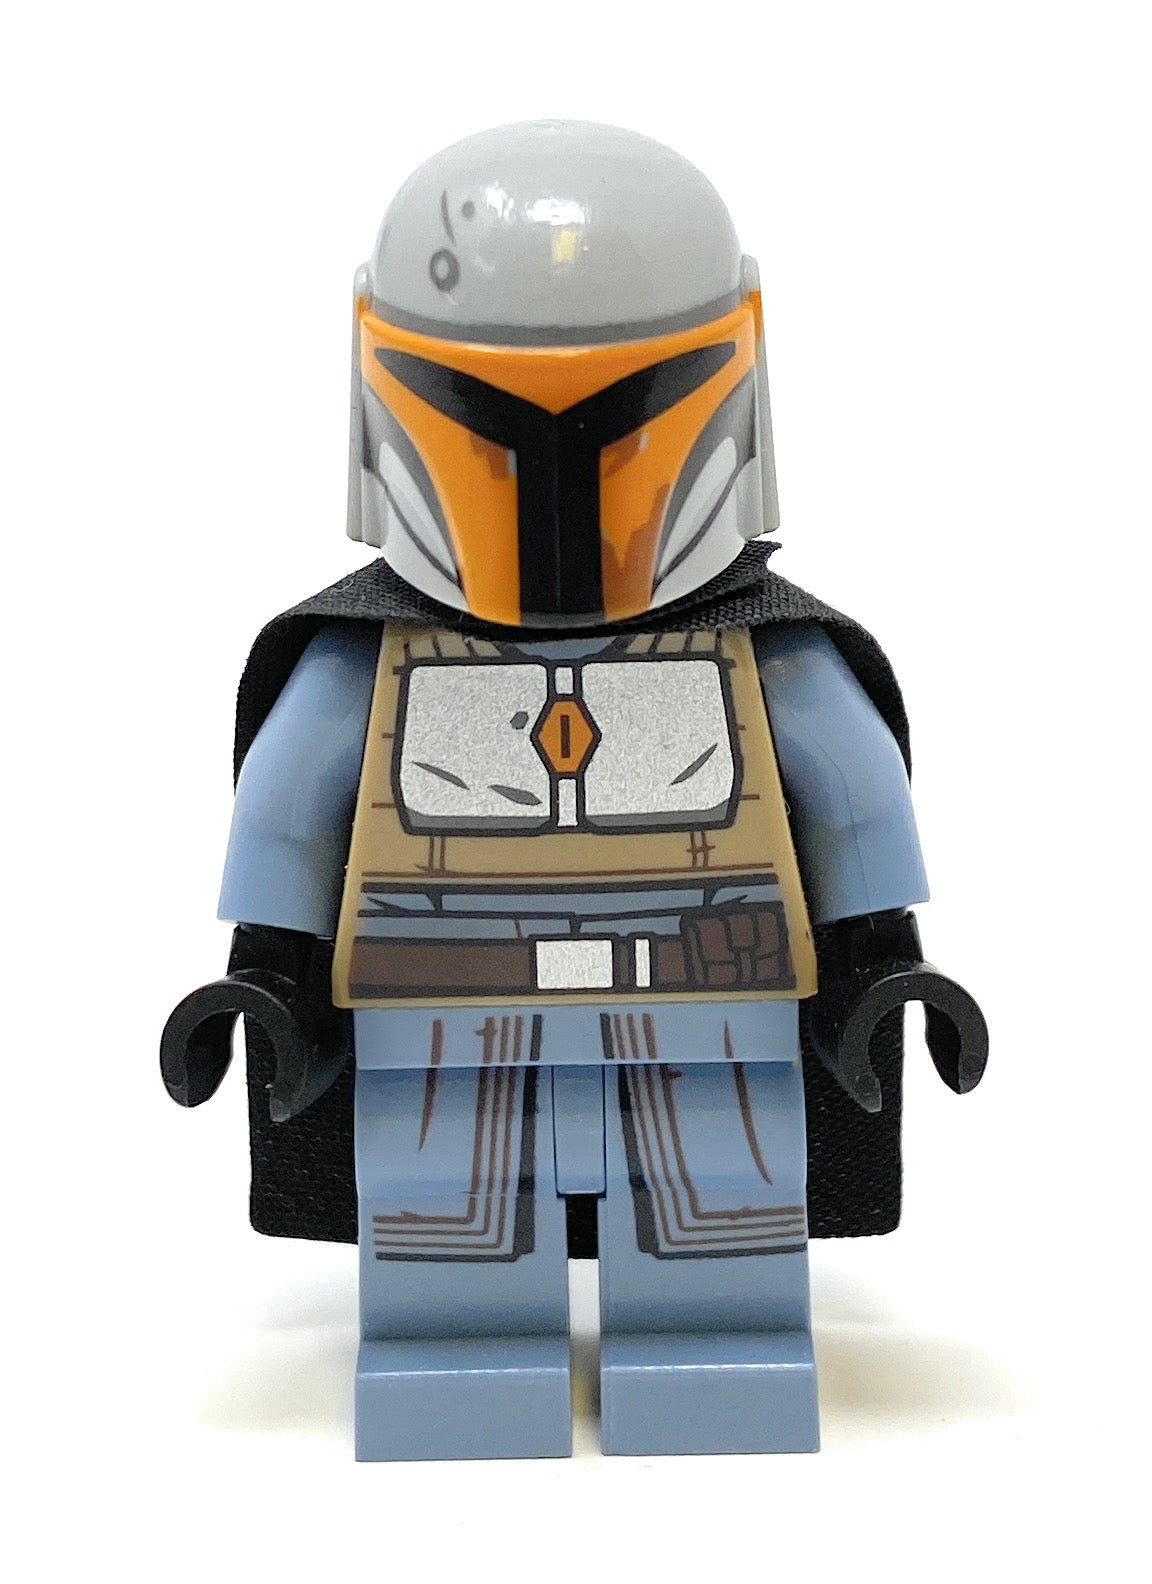 Mandalorian Warrior (Orange/Blue) - LEGO Star Wars Minifigure (2020)